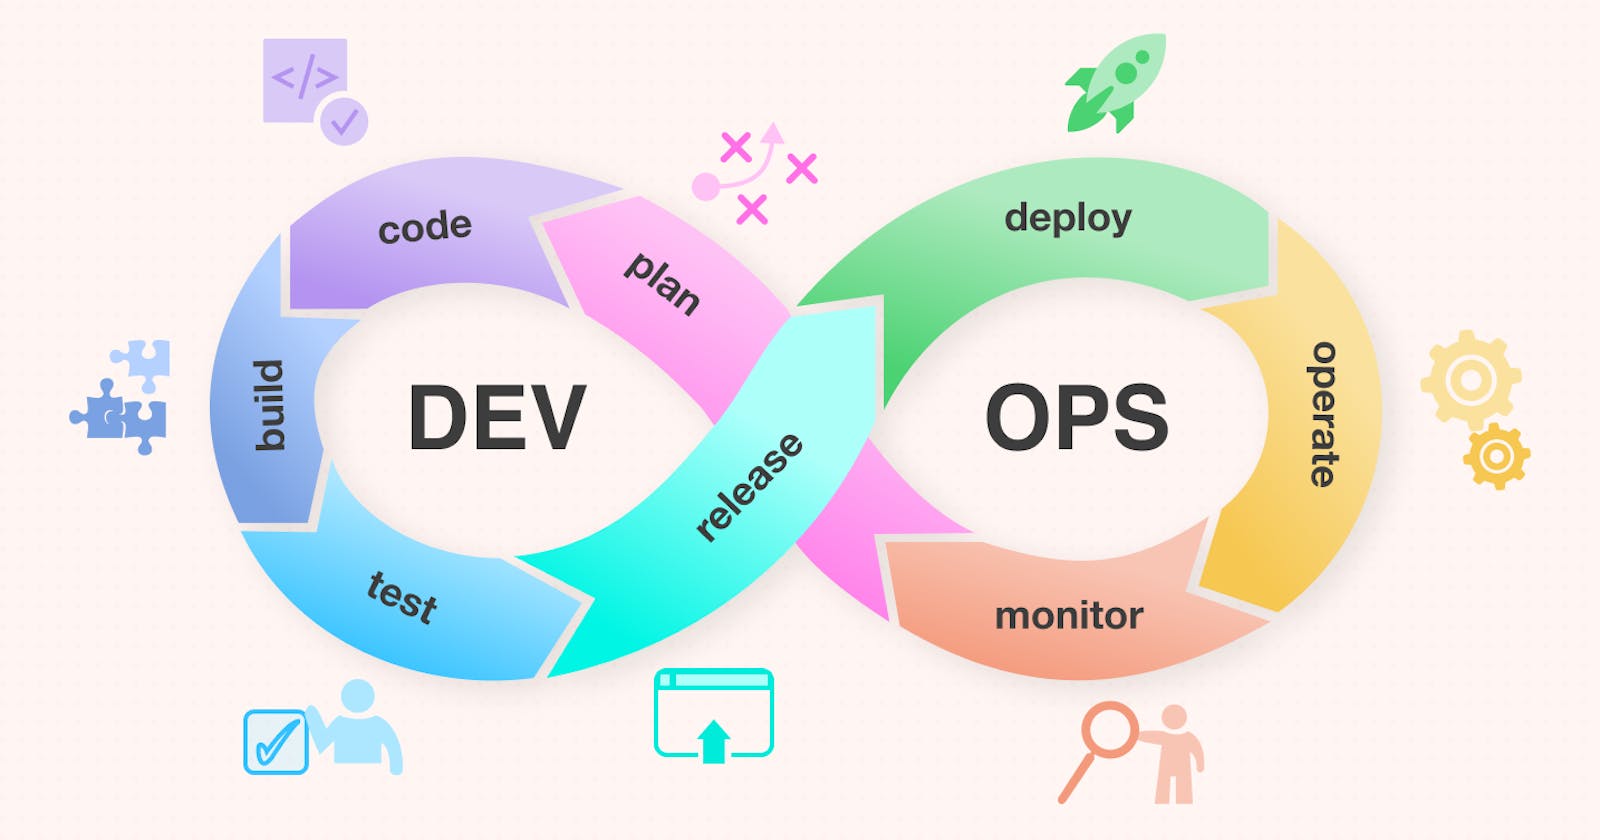 Why Organization needs DevOps specialist?